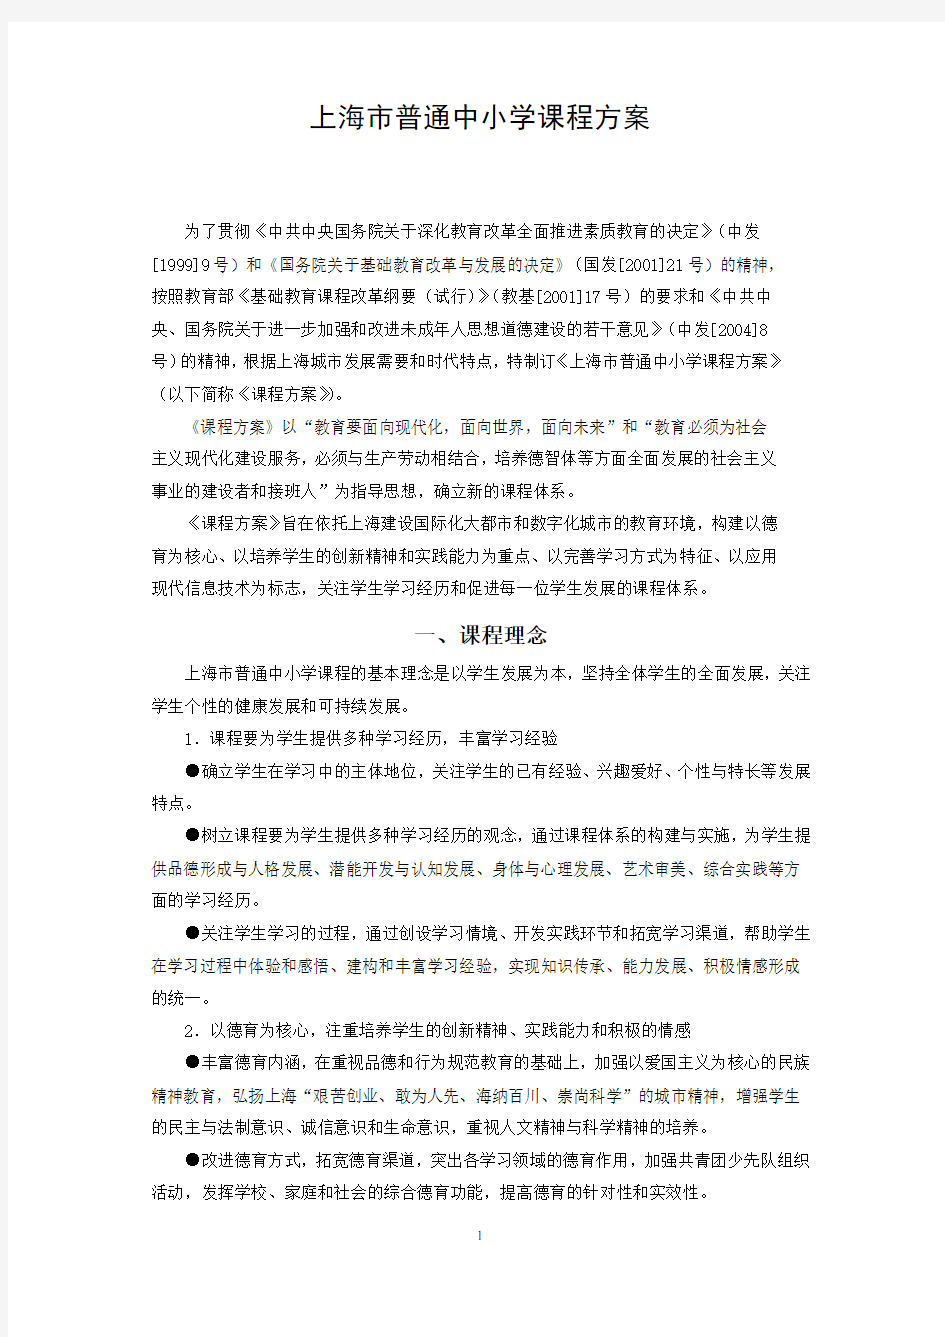 《上海市普通中小学课程方案(试行稿)》(全文)